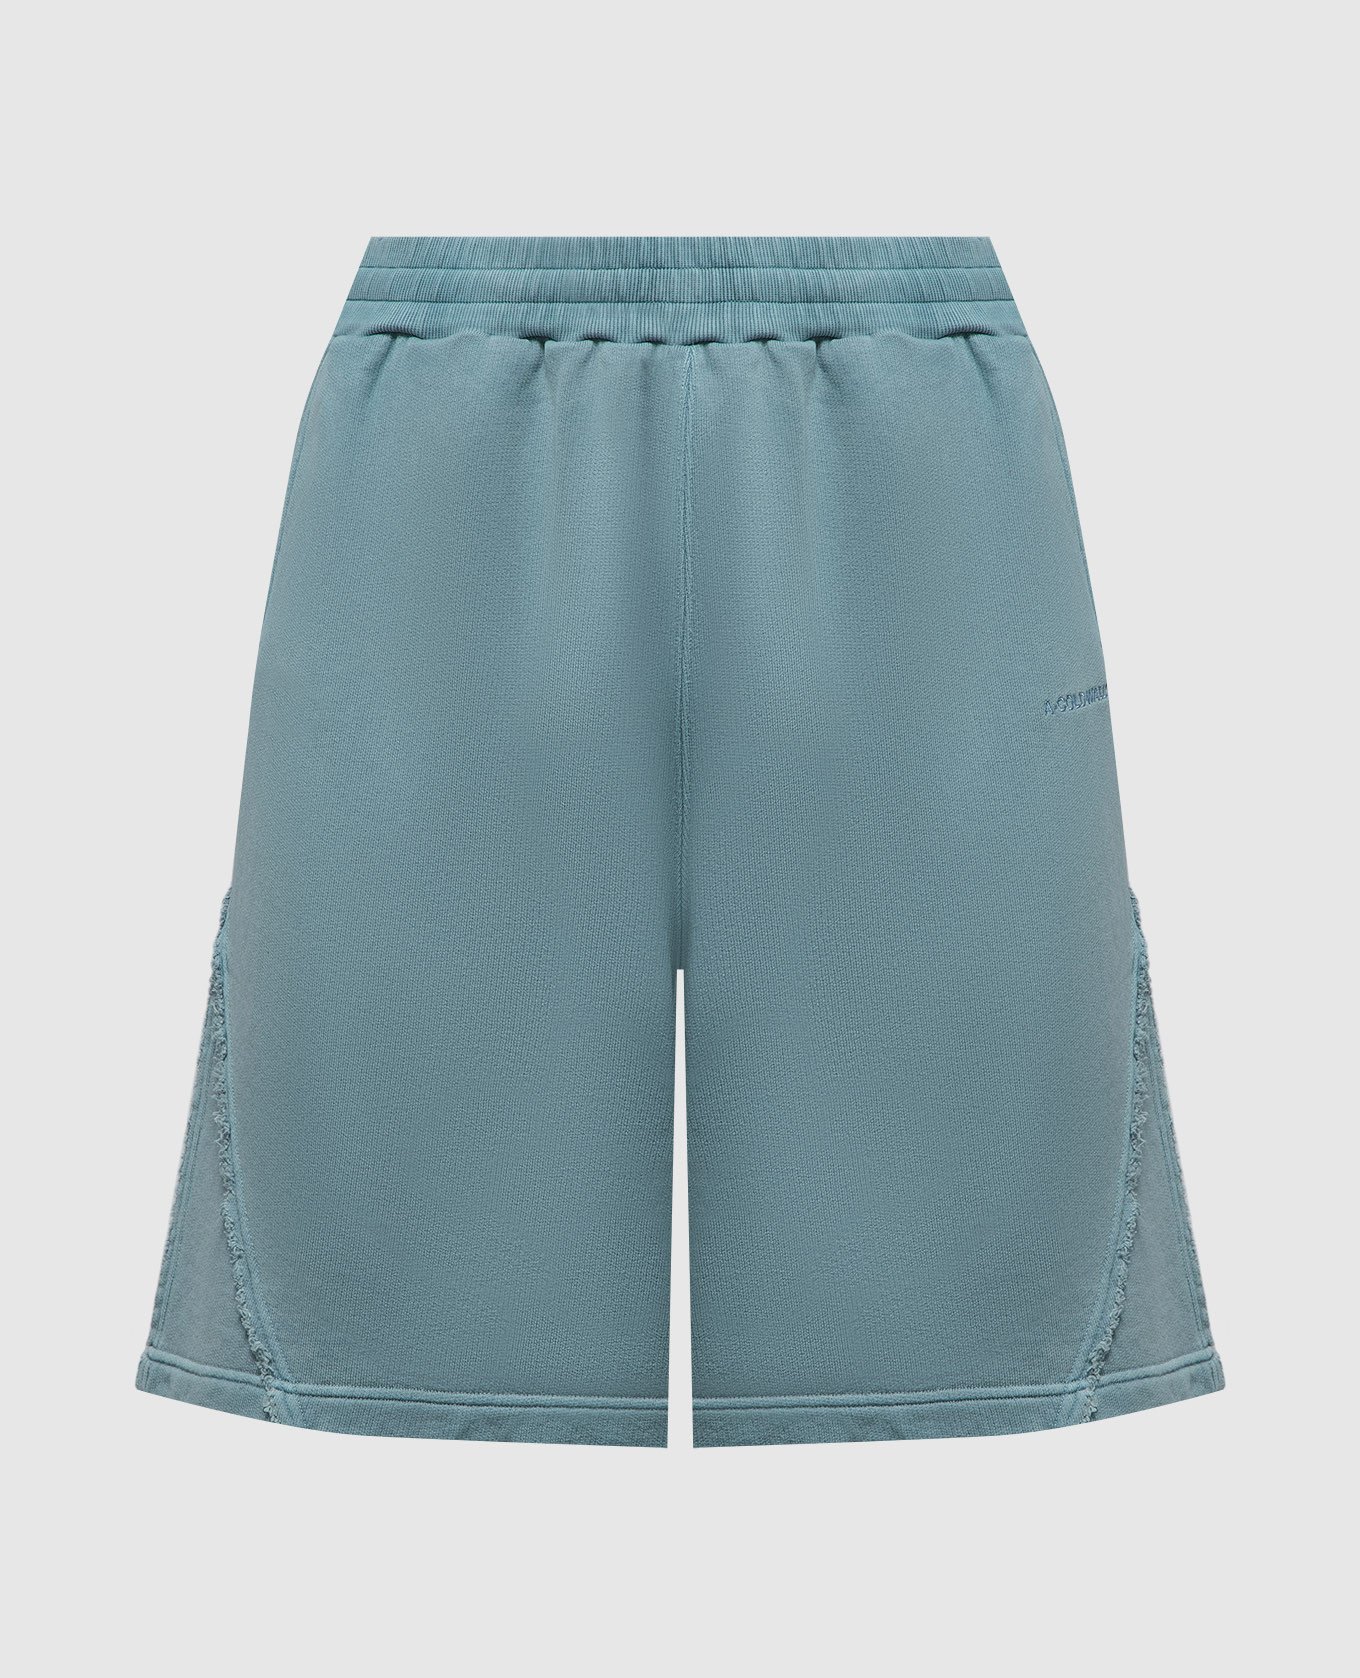 Cubist blue shorts